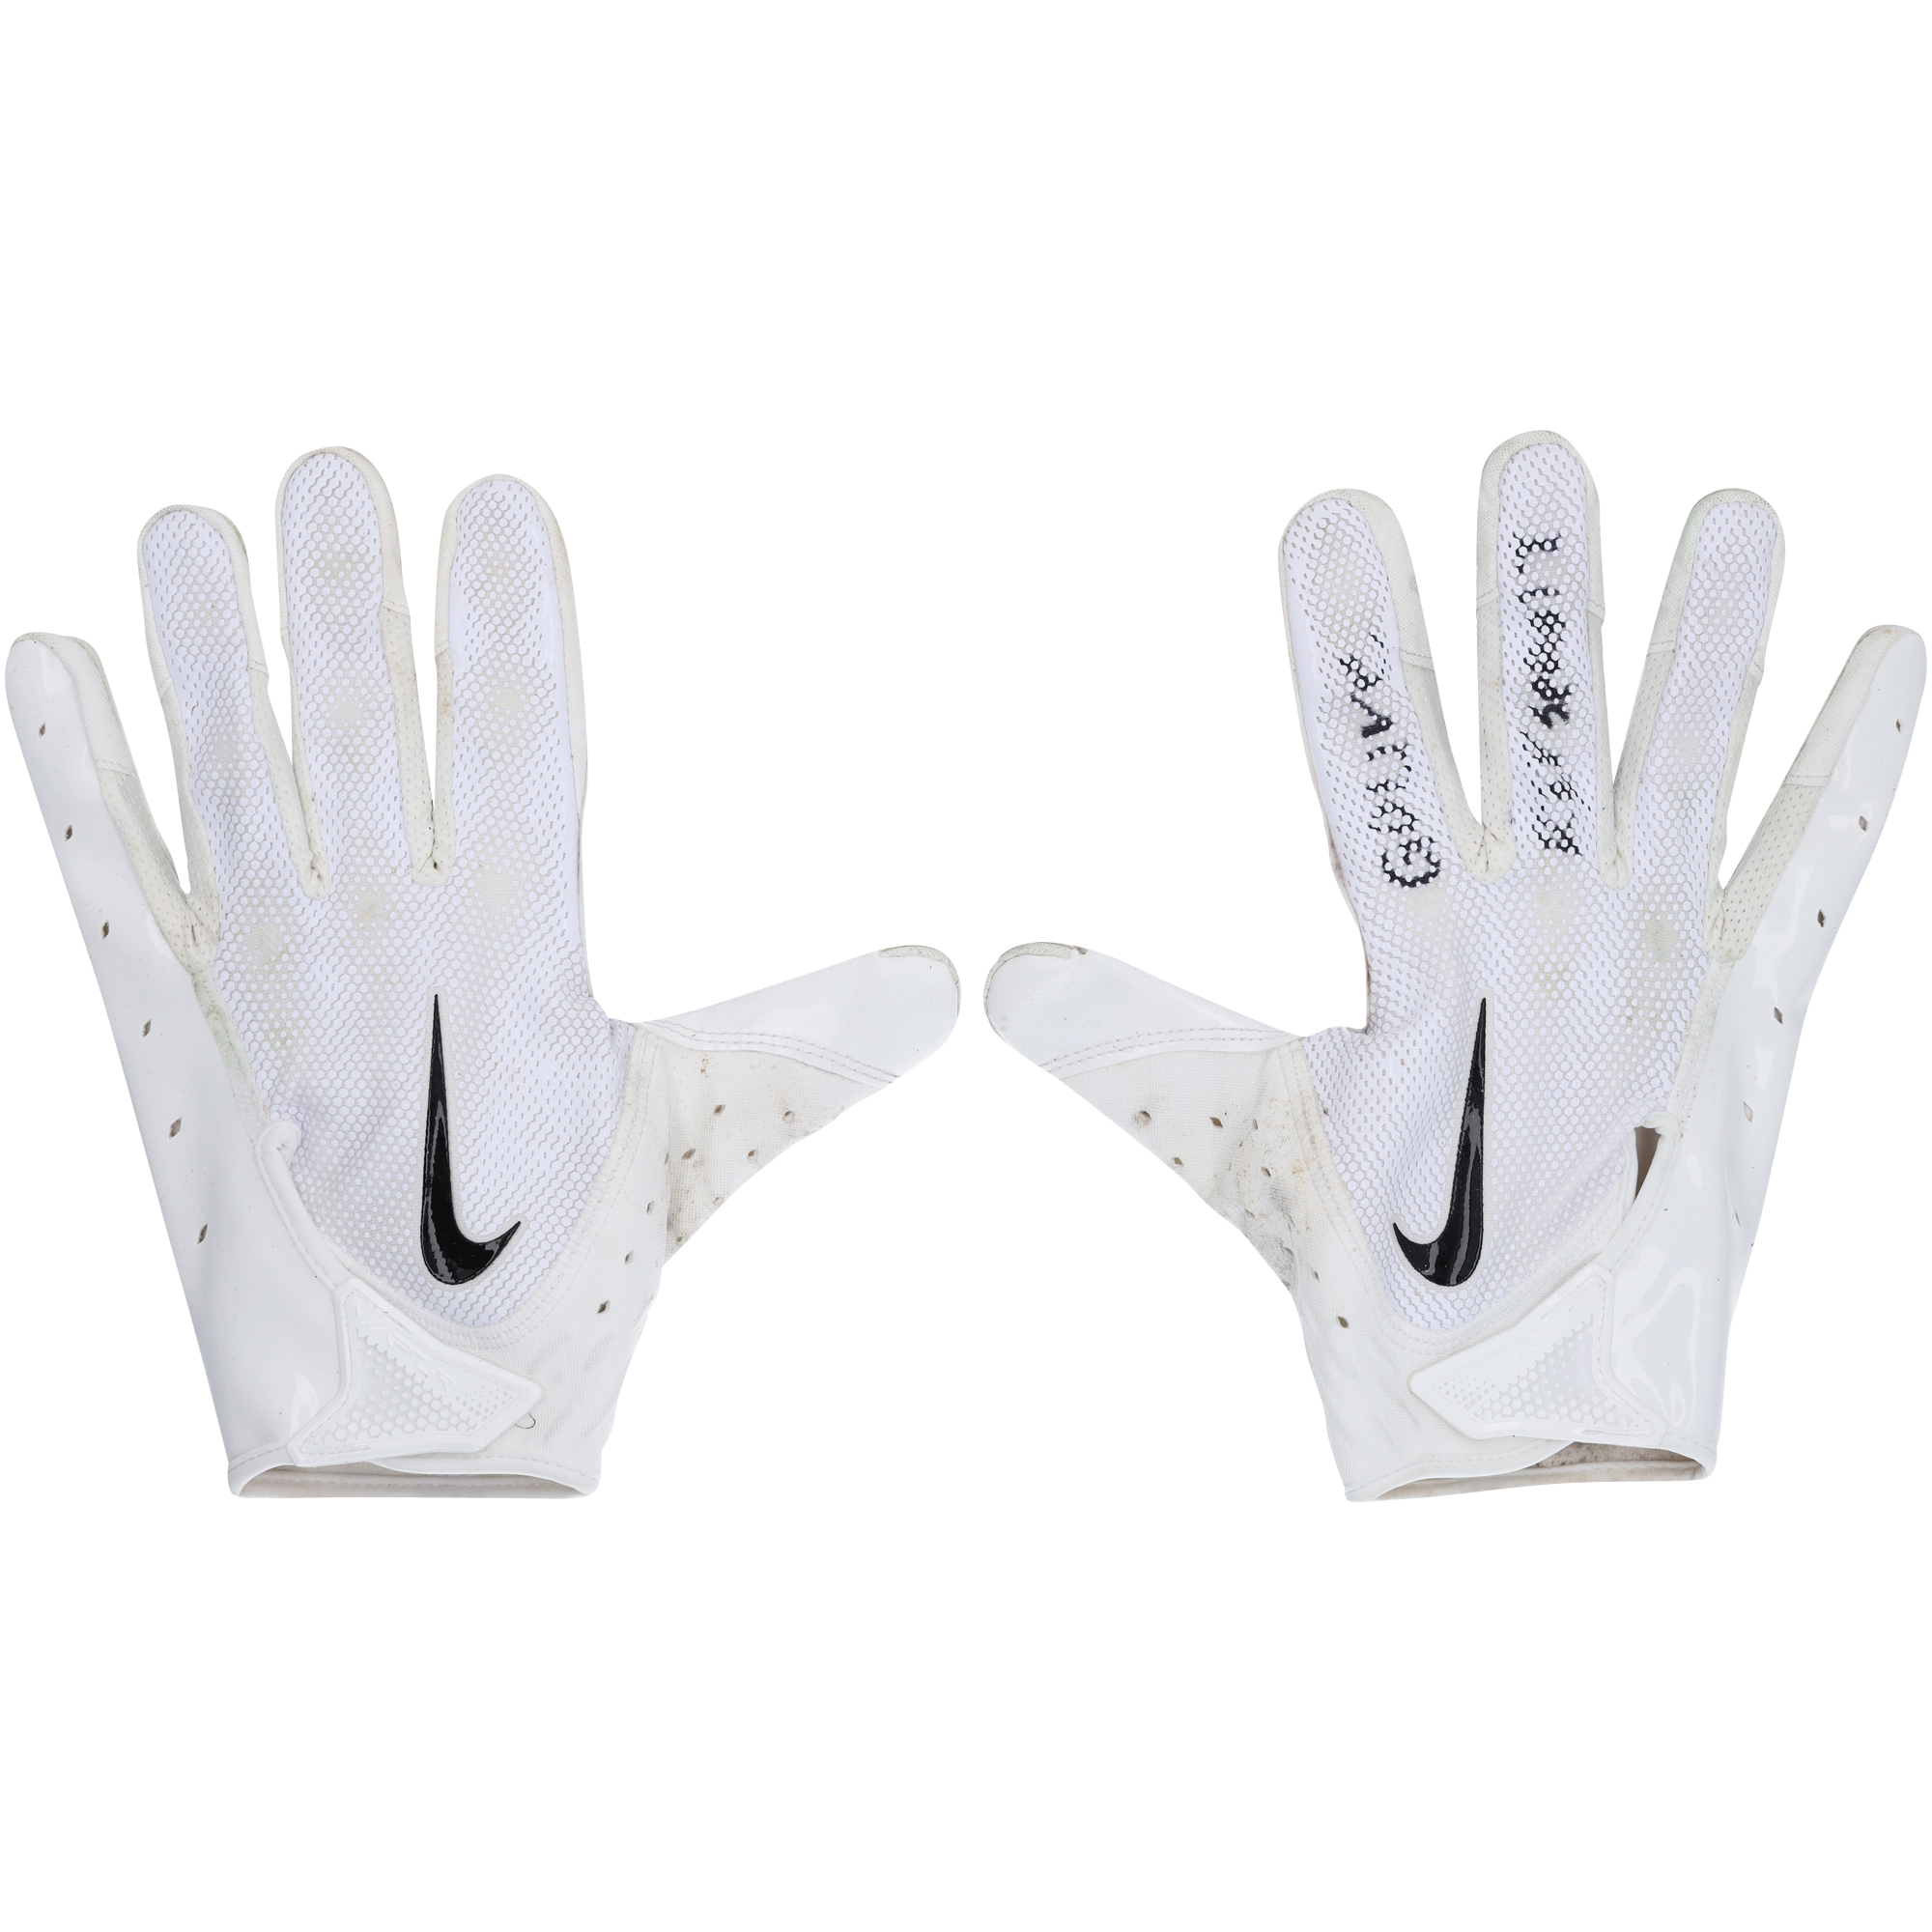 Ronnie Harrison Jr. Cleveland Browns – Im Spiel getragene weiße Nike-Handschuhe gegen die Washington Commanders am 1. Januar 2023